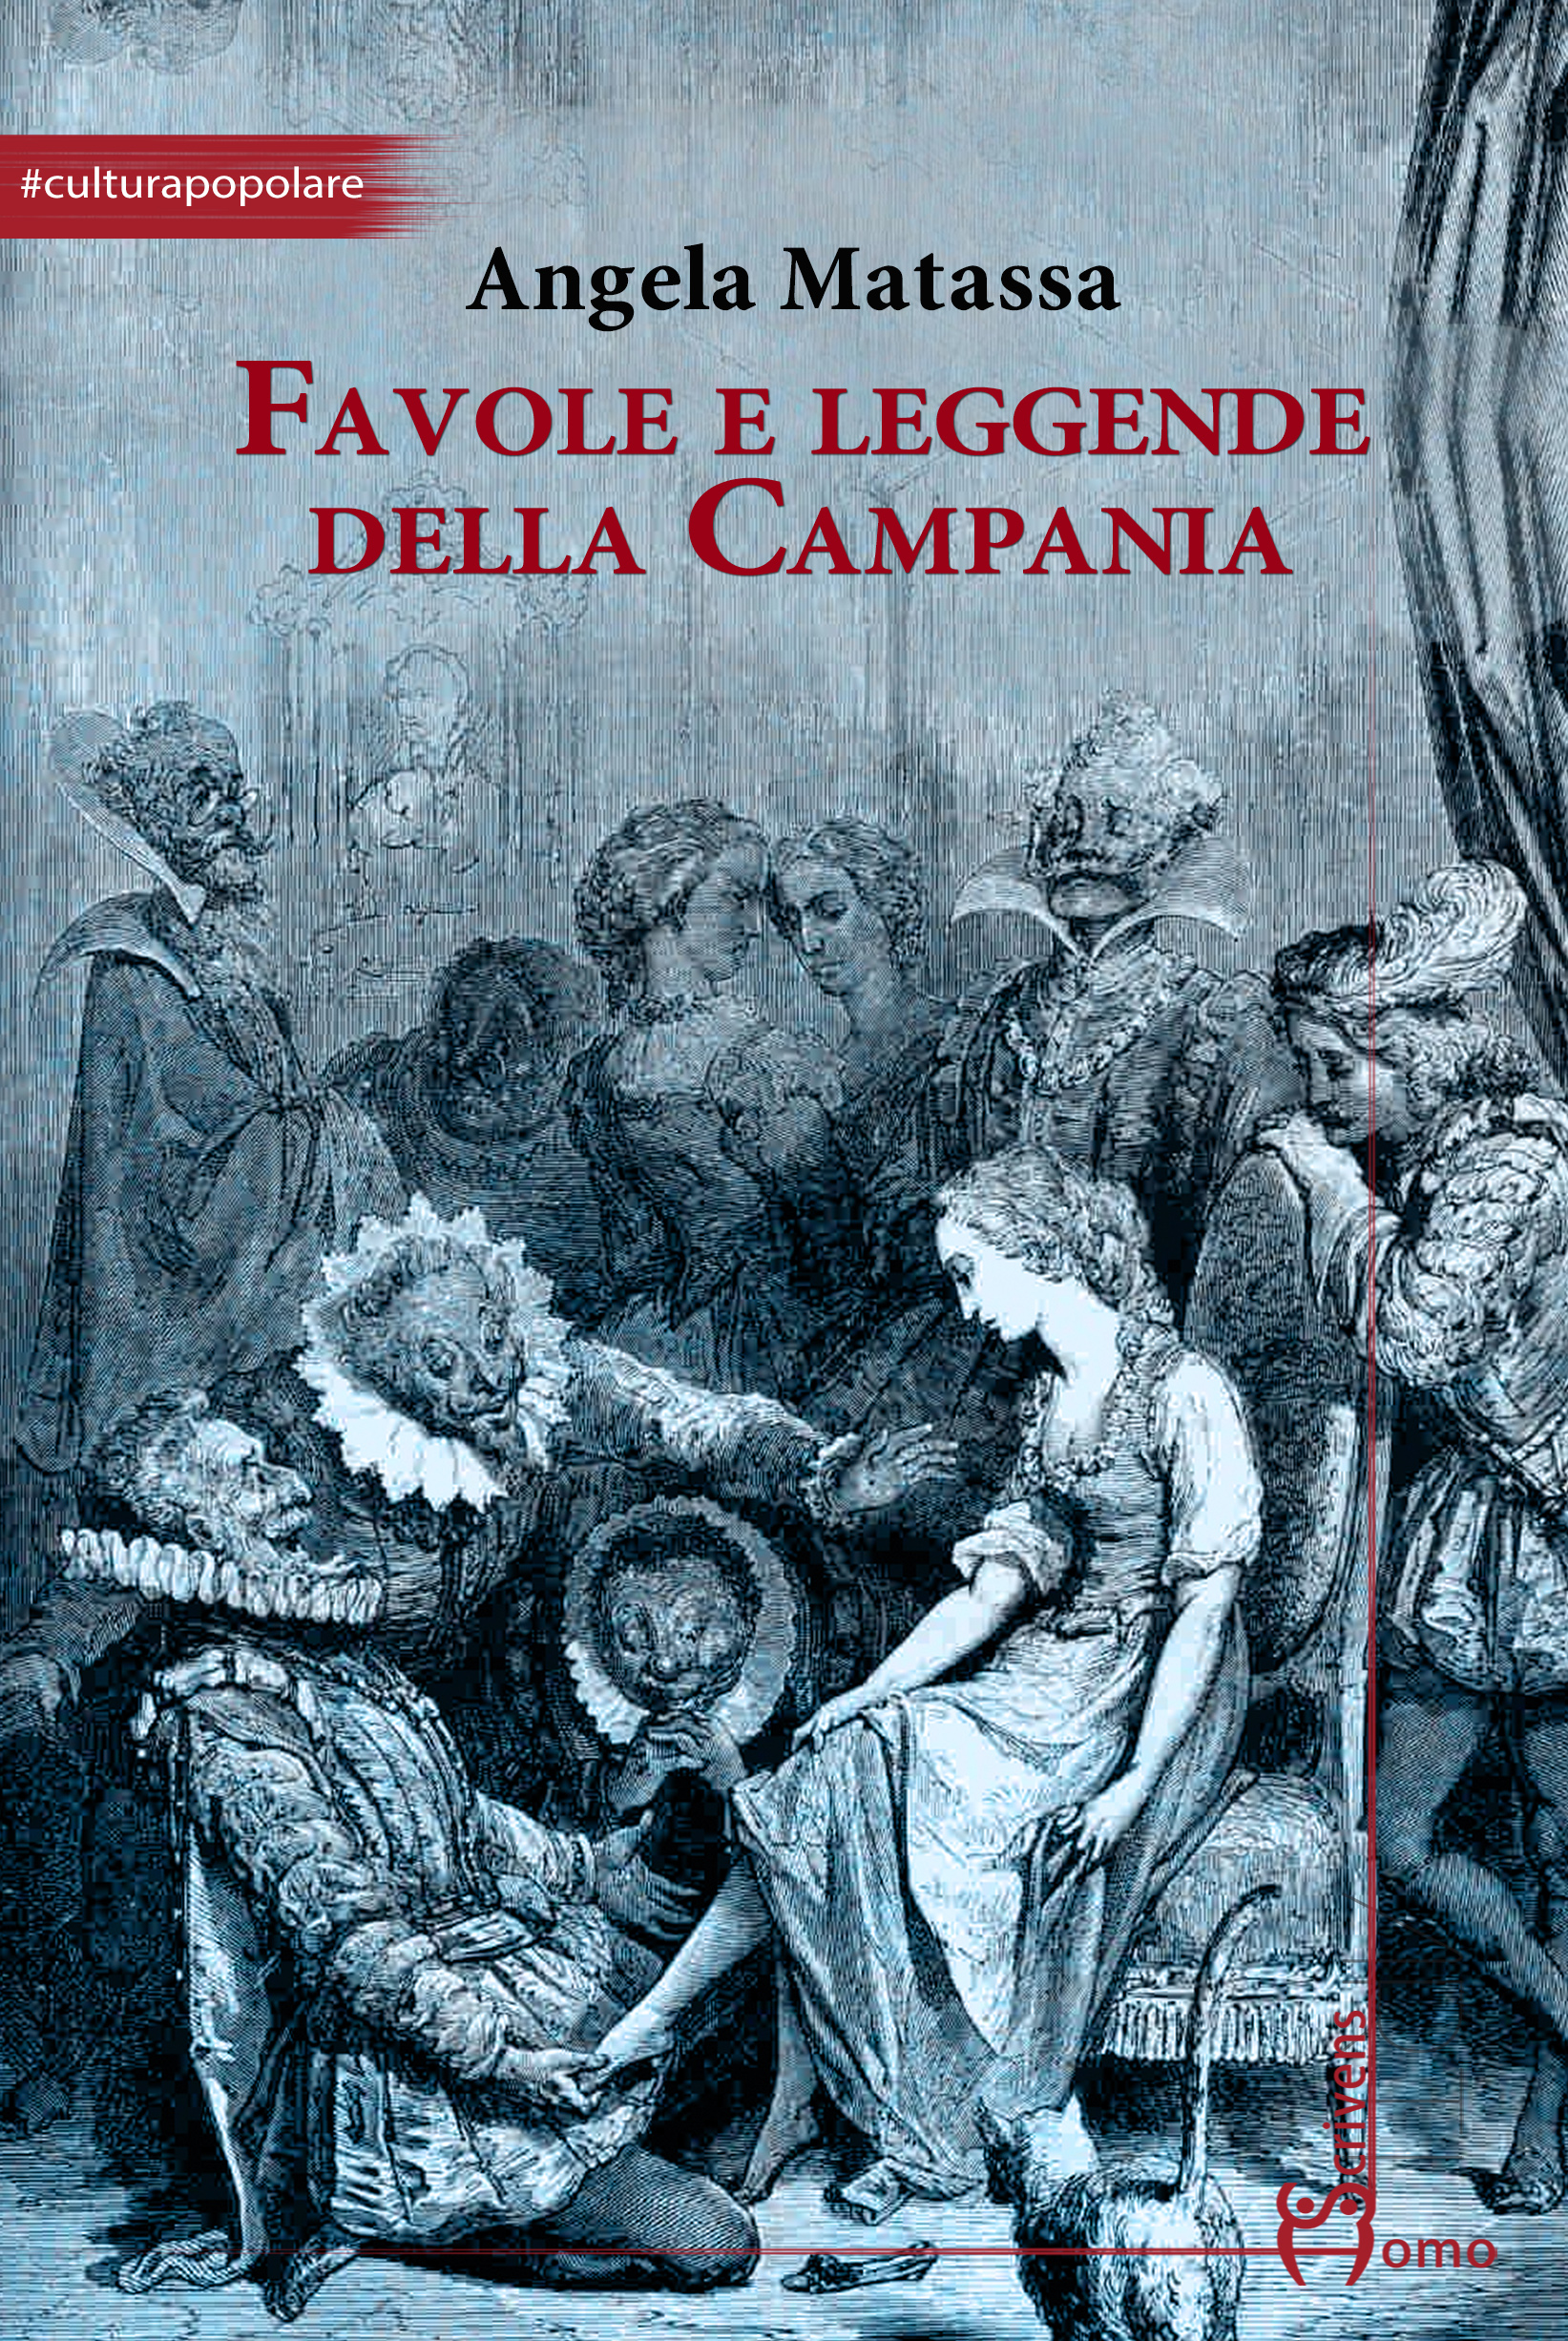 Teatro Diana, sabato 13 gennaio presentazione del libro "Favole e leggende della Campania"